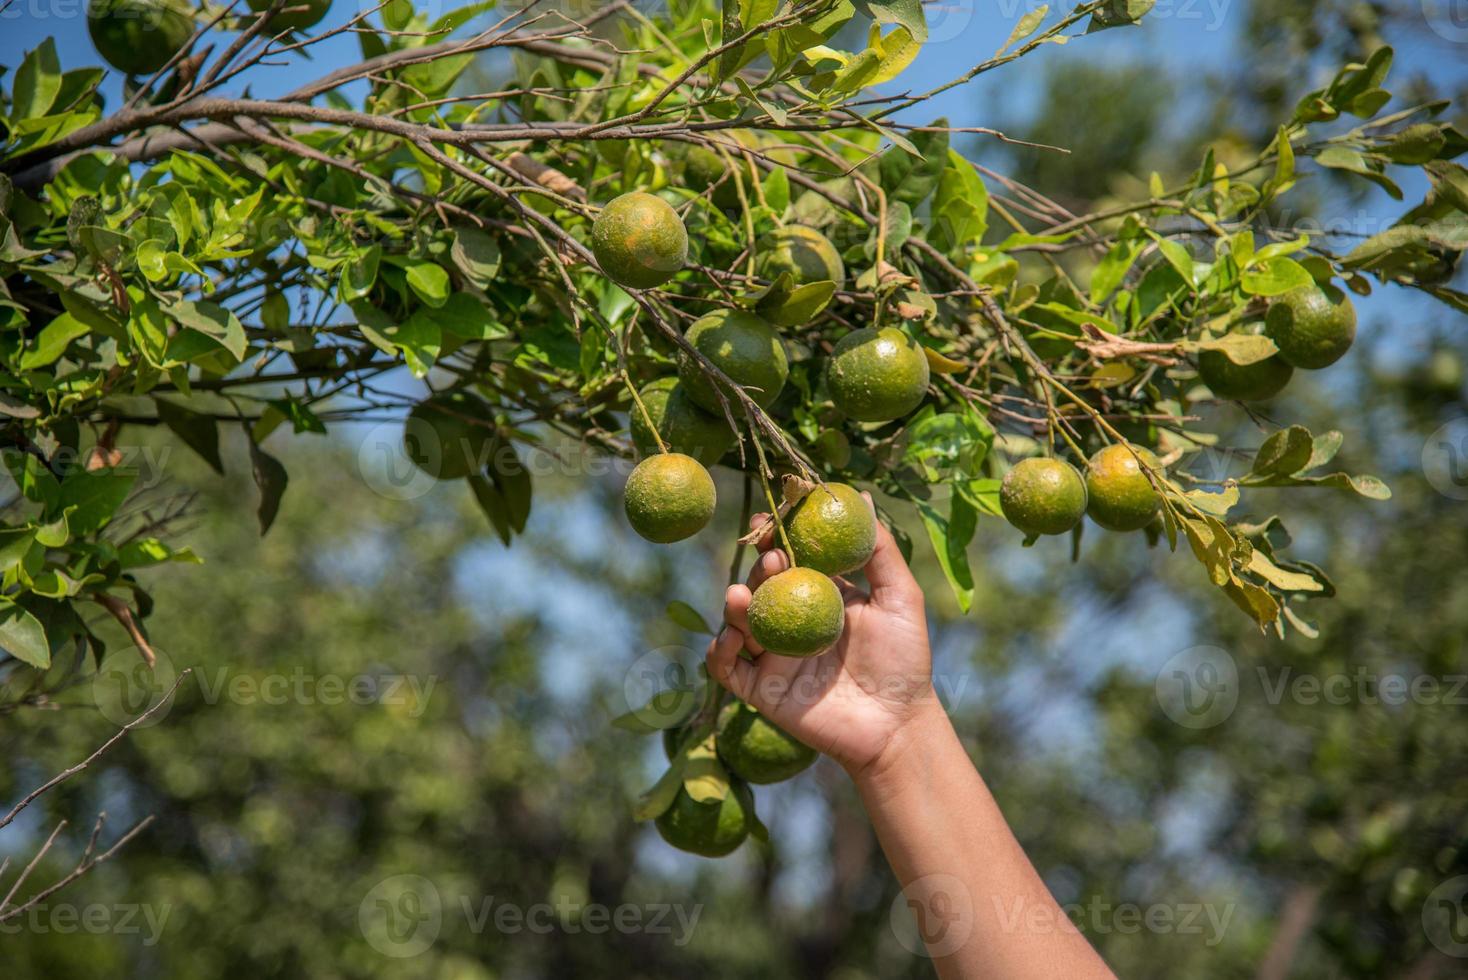 jong boerenmeisje dat zoete sinaasappels van bomen in handen houdt en onderzoekt. foto